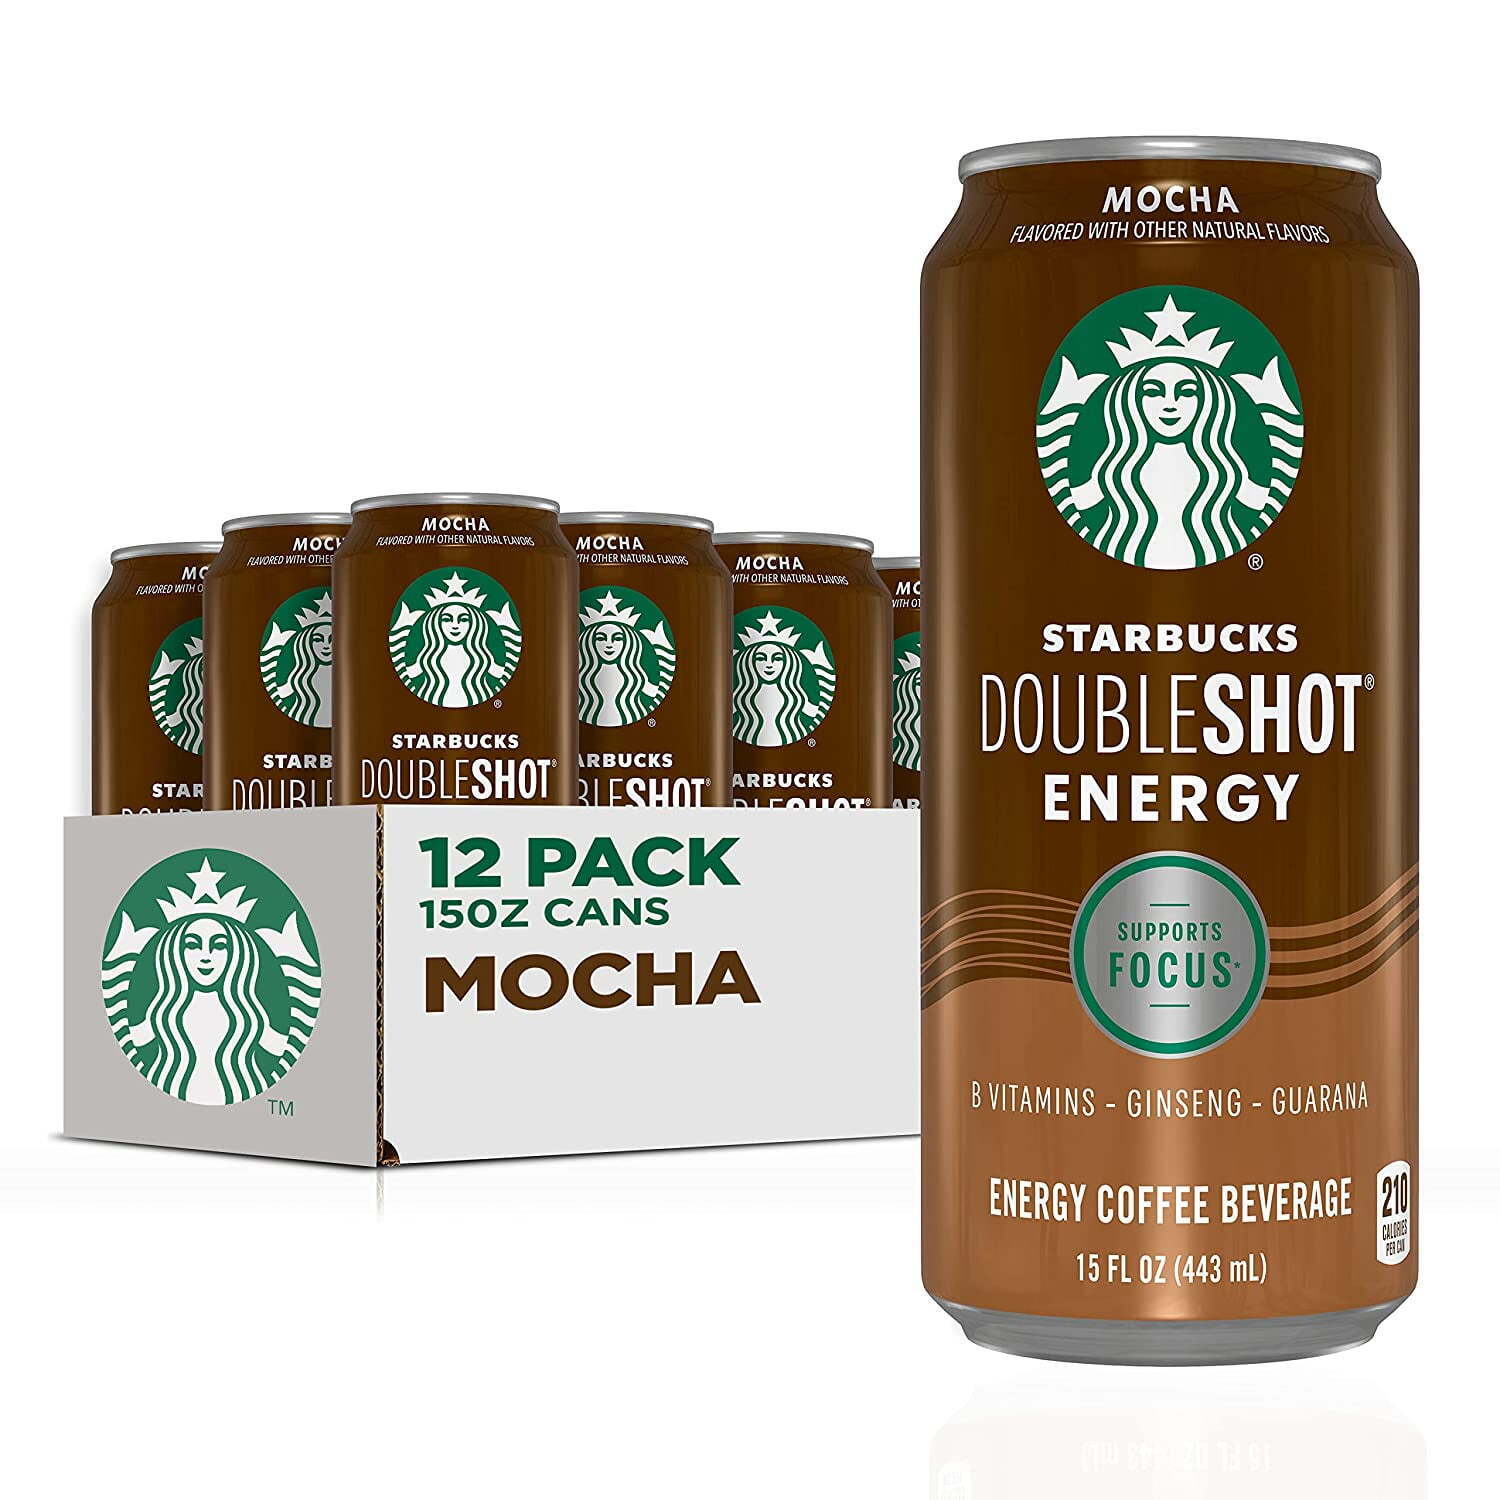 Starbucks Doubleshot Energy Mocha Coffee Energy Drink, 15 oz, 12 Count Cans US